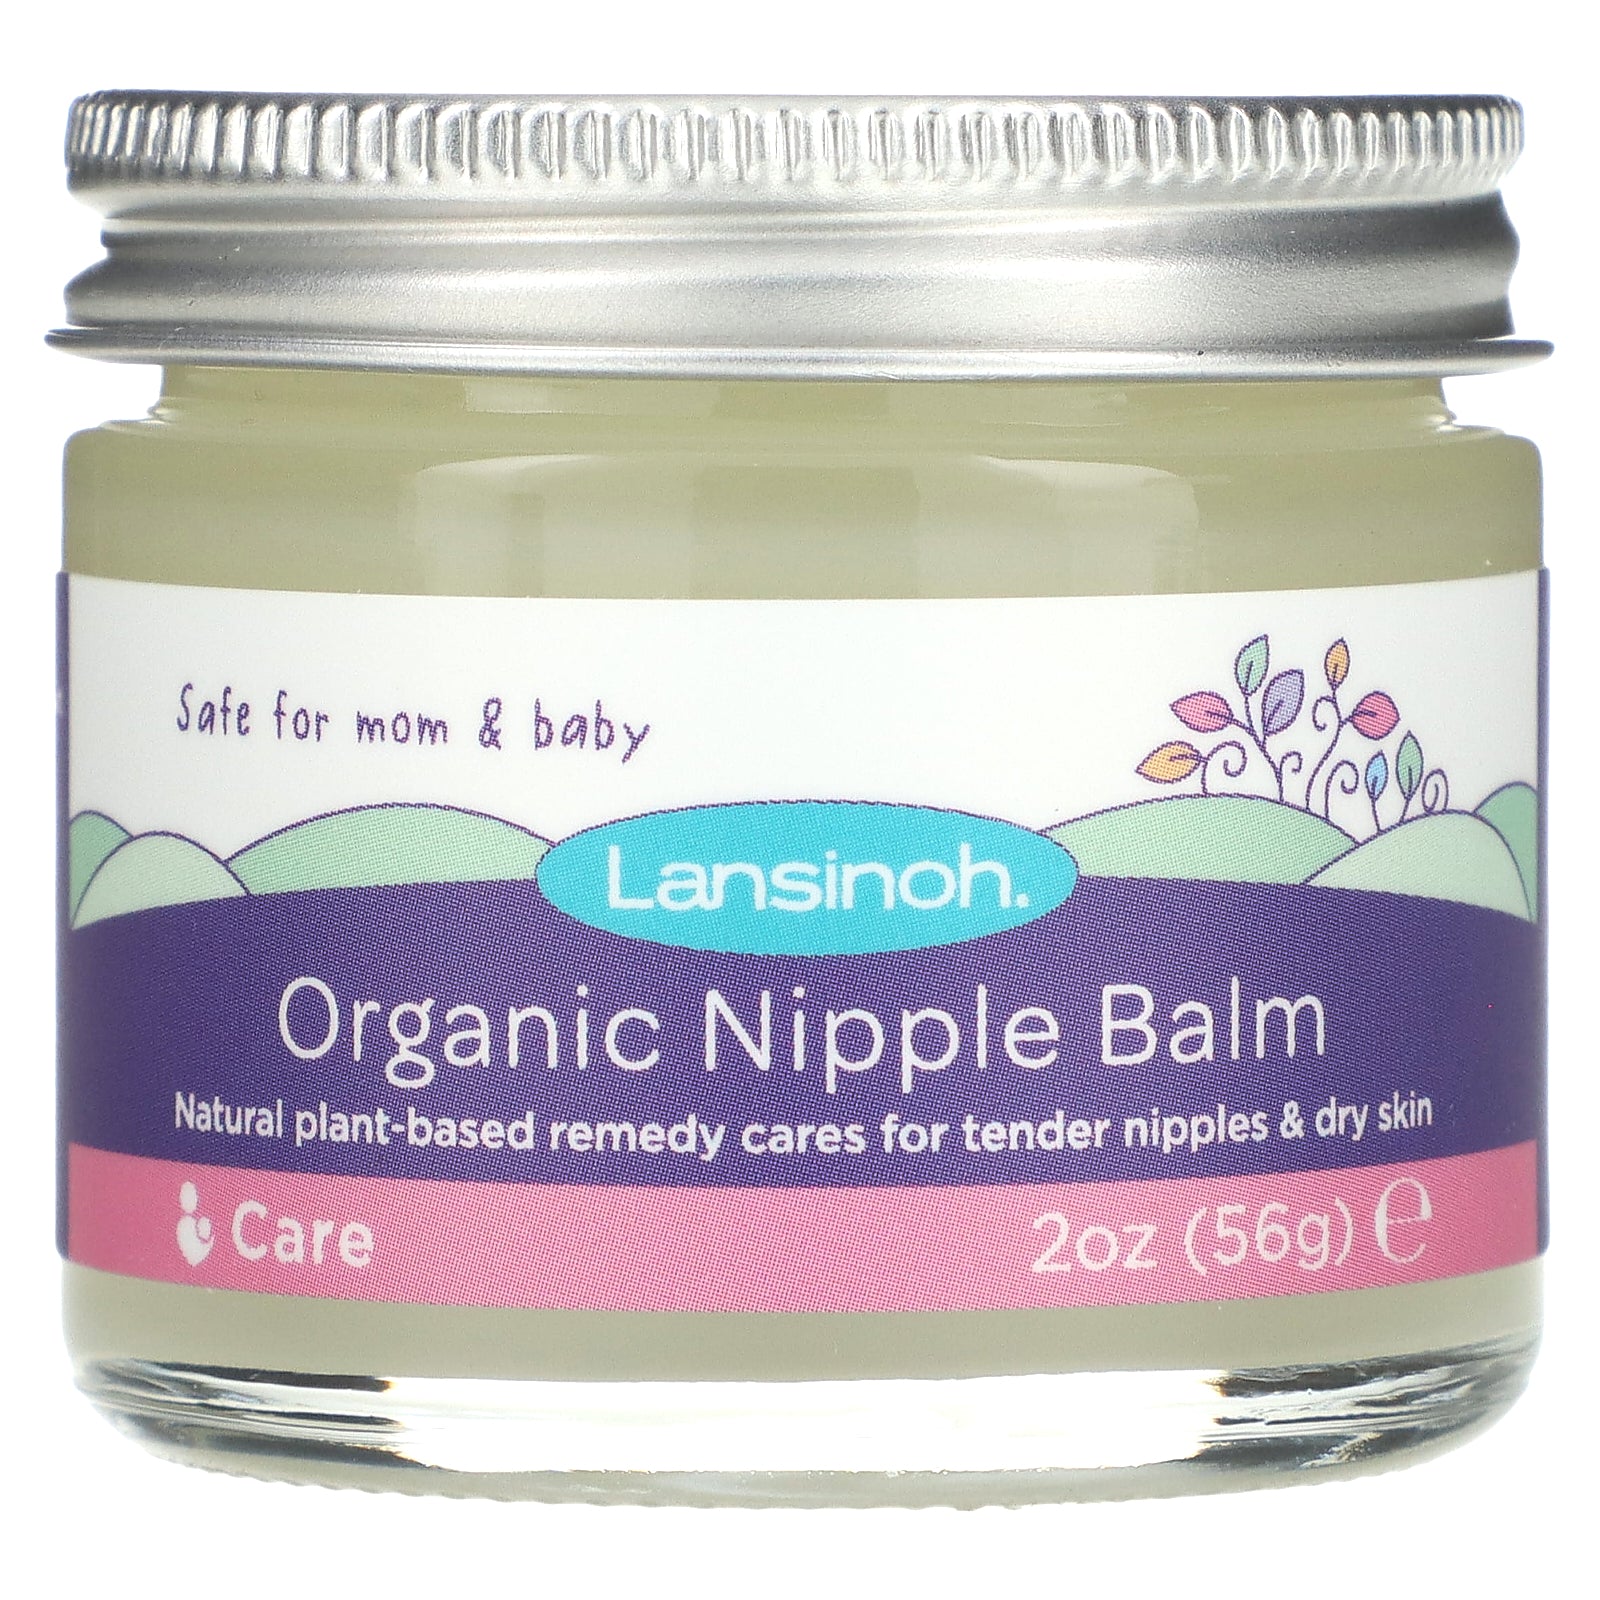 Lansinoh Organic Nipple Cream, 2 oz/56 g Ingredients and Reviews